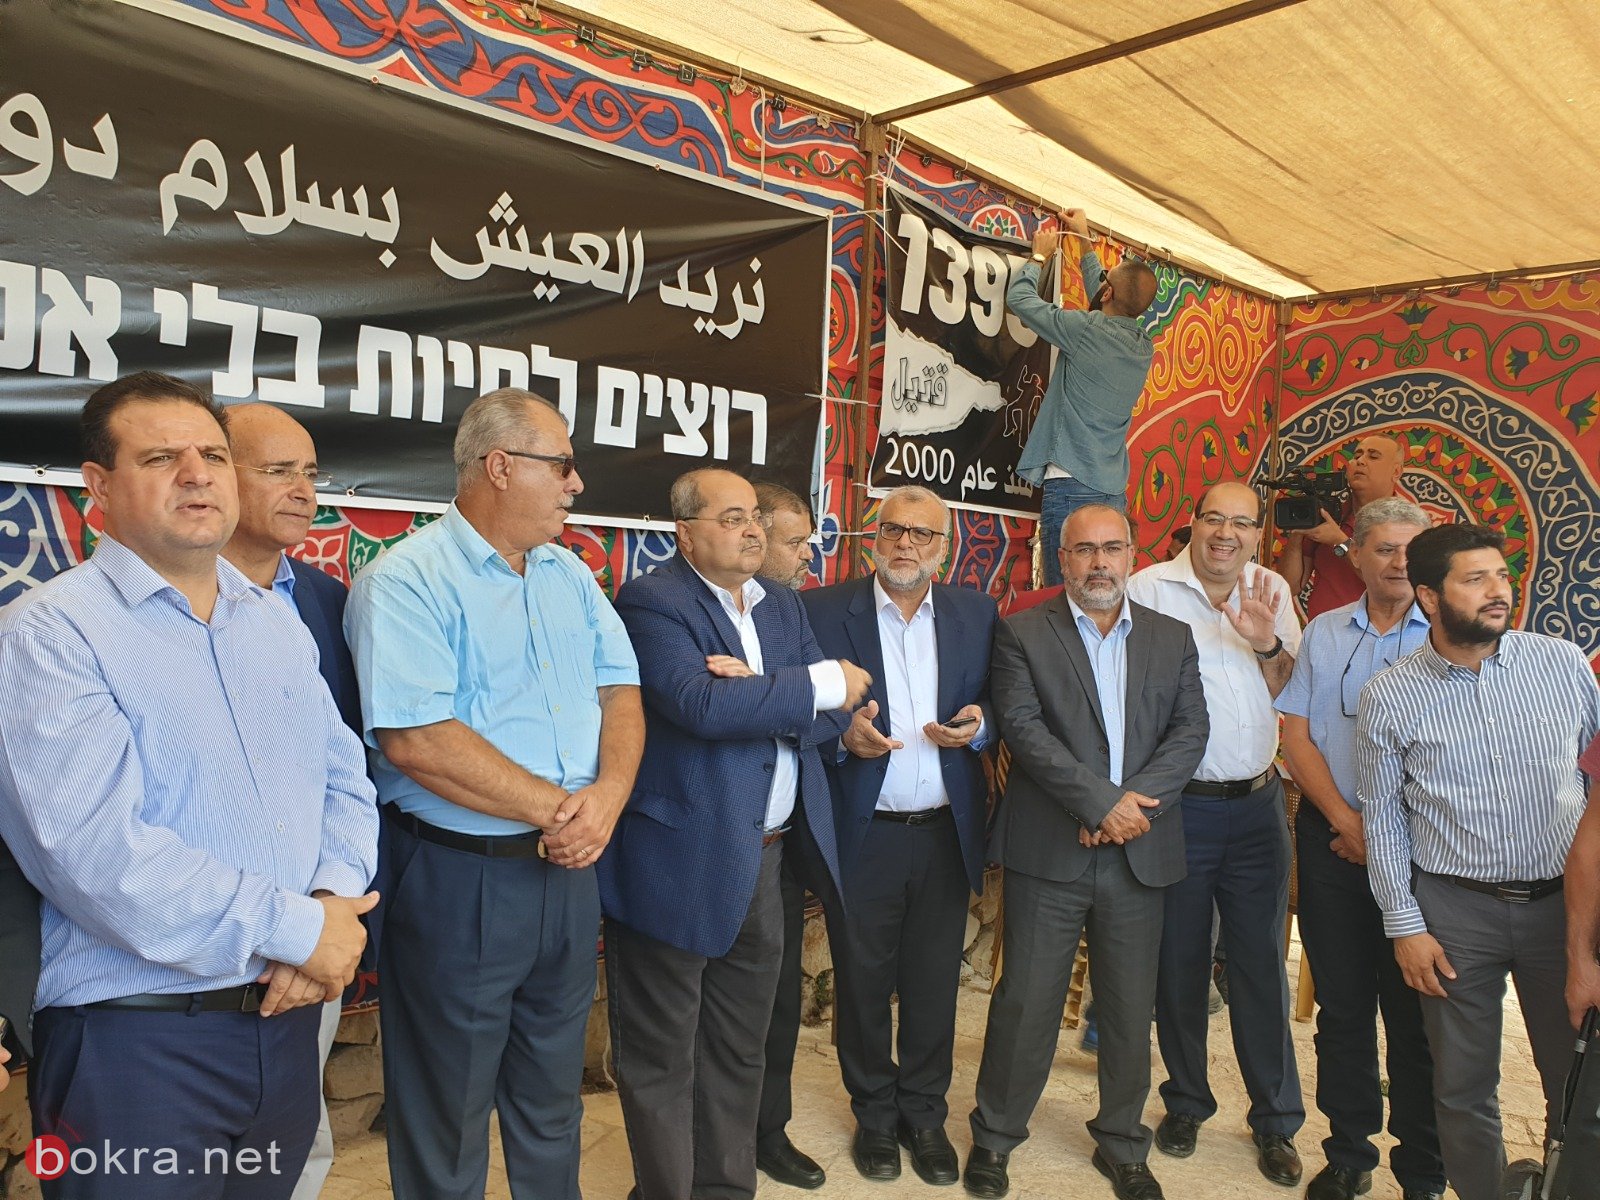 المتابعة: نجاح باهر لخيمة الاحتجاج في القدس وفرضت نفسها على الرأي العام -1